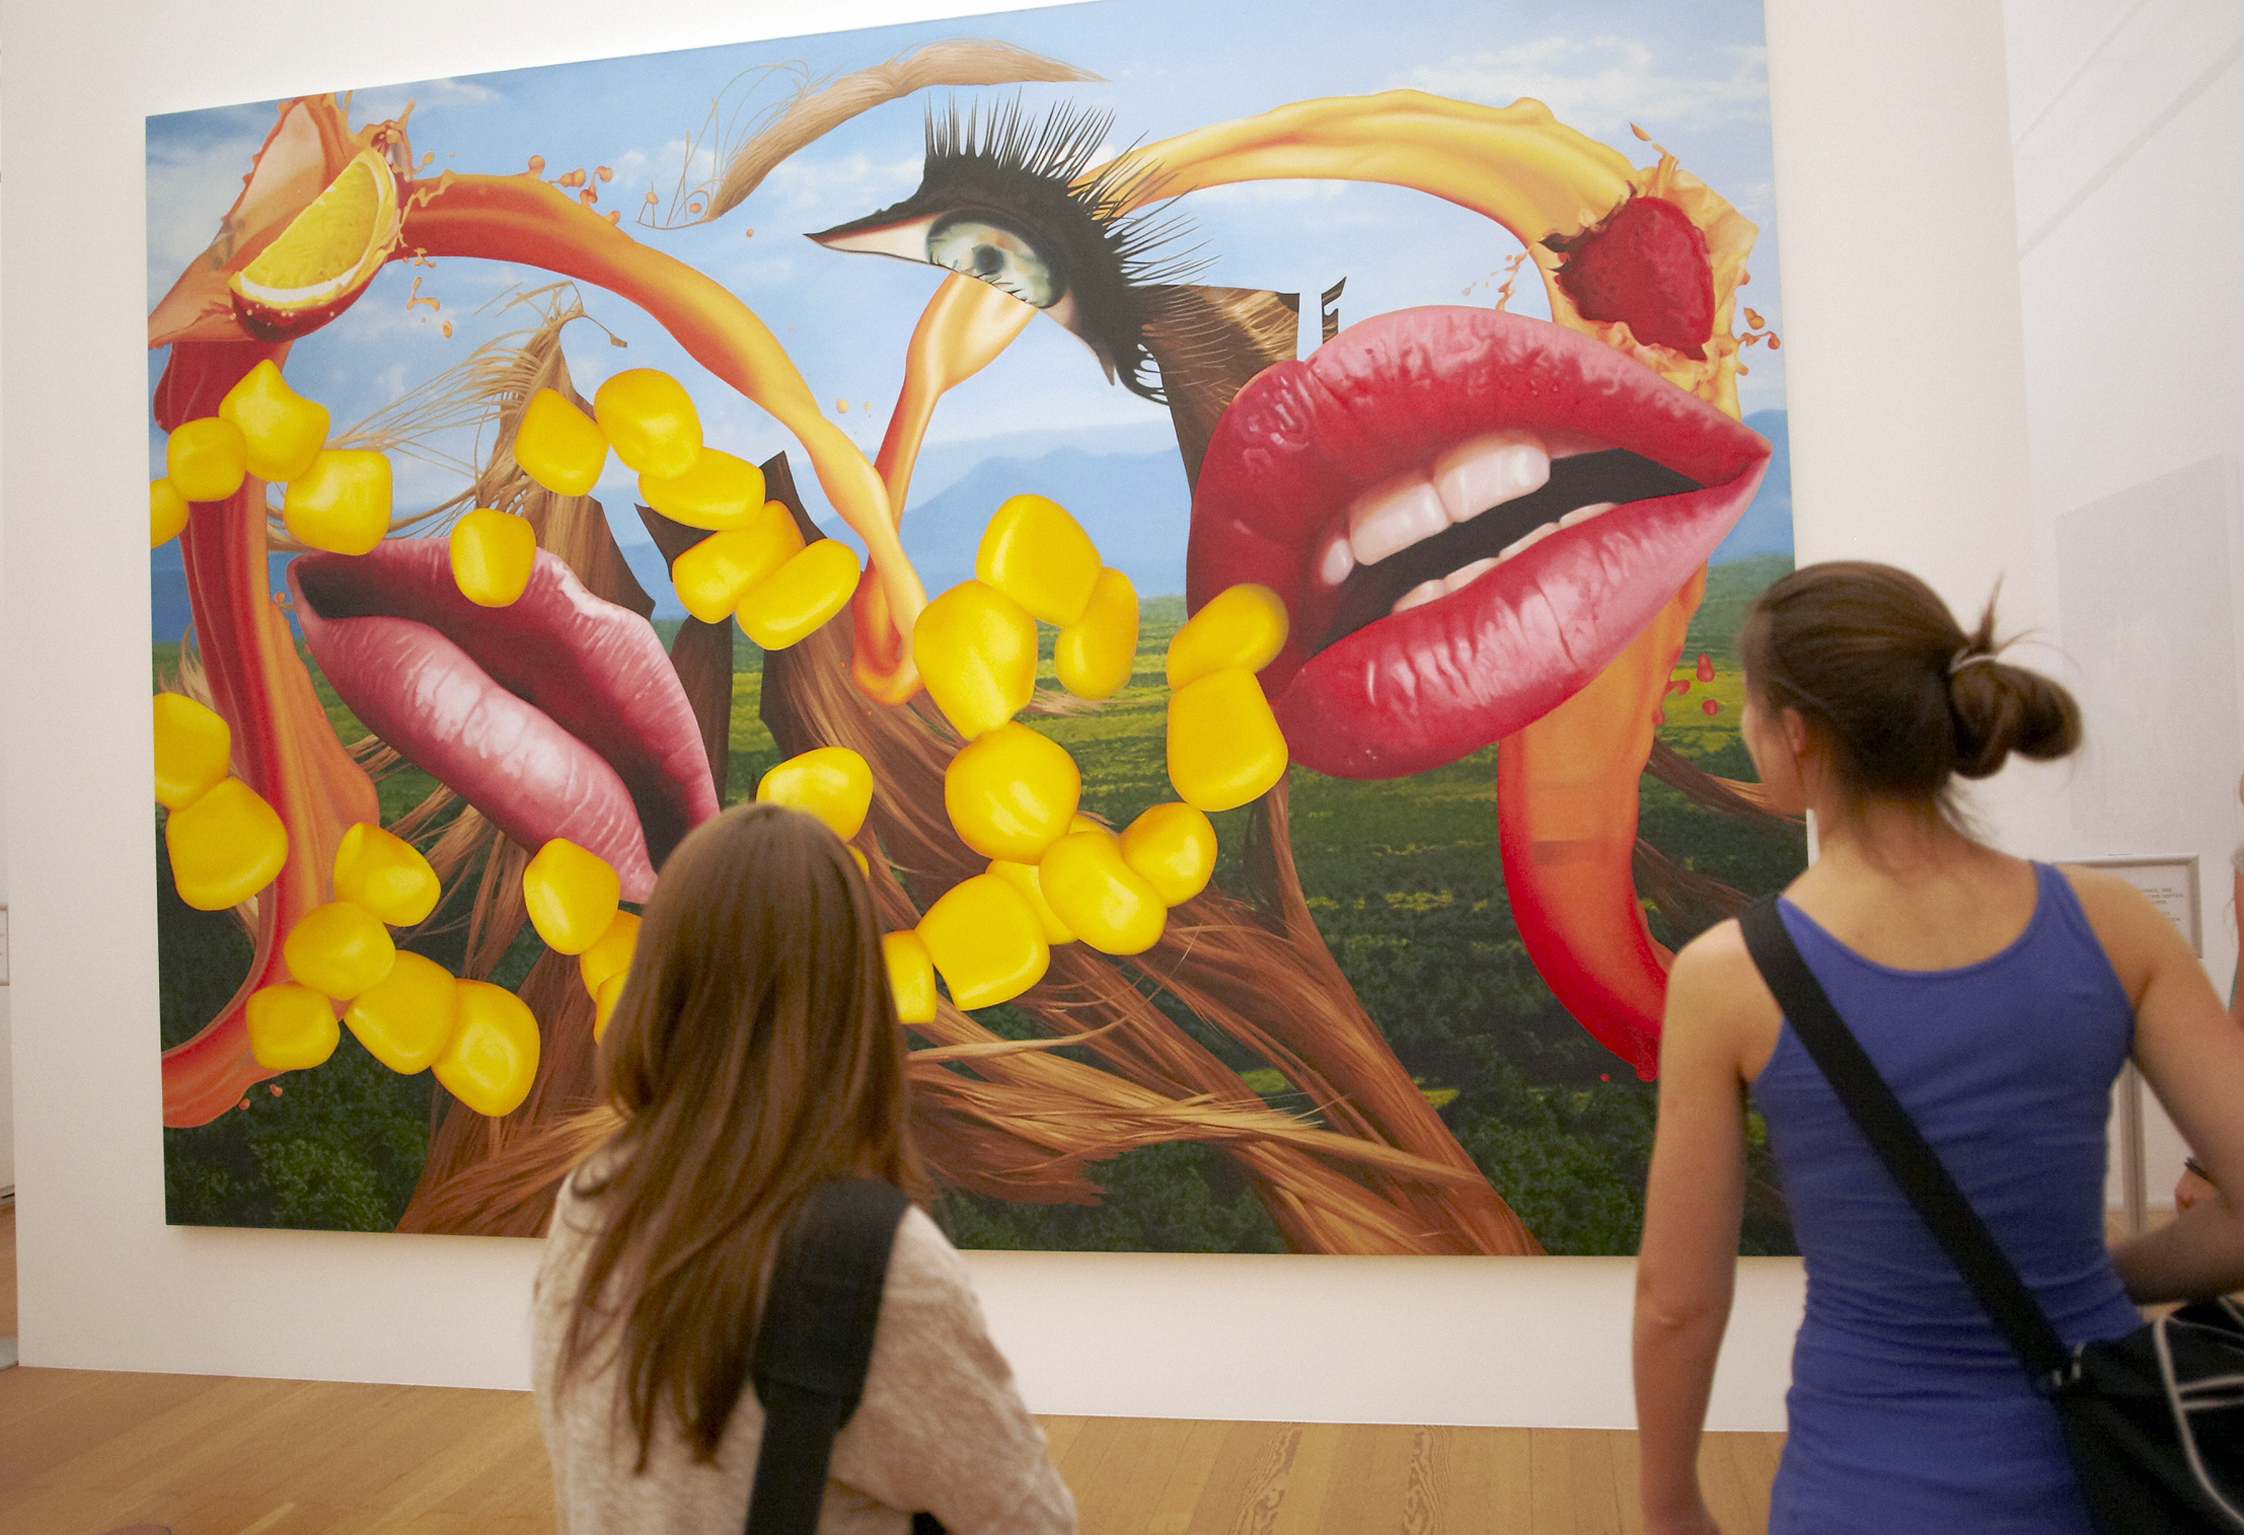 Jeff Koons Paintings